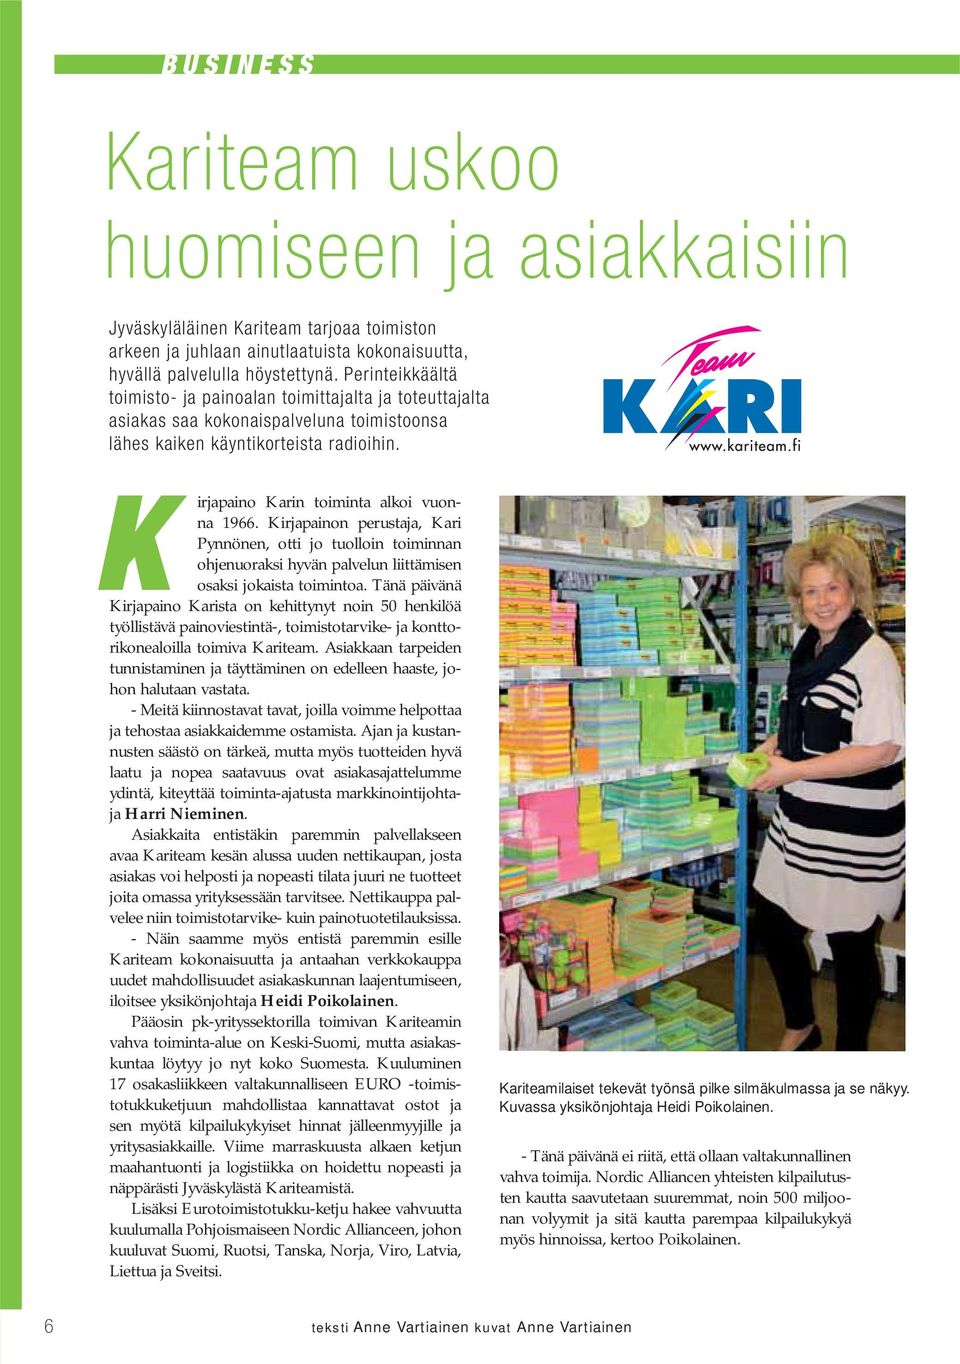 Kirjapainon perustaja, Kari Pynnönen, otti jo tuolloin toiminnan ohjenuoraksi hyvän palvelun liittämisen osaksi jokaista toimintoa.